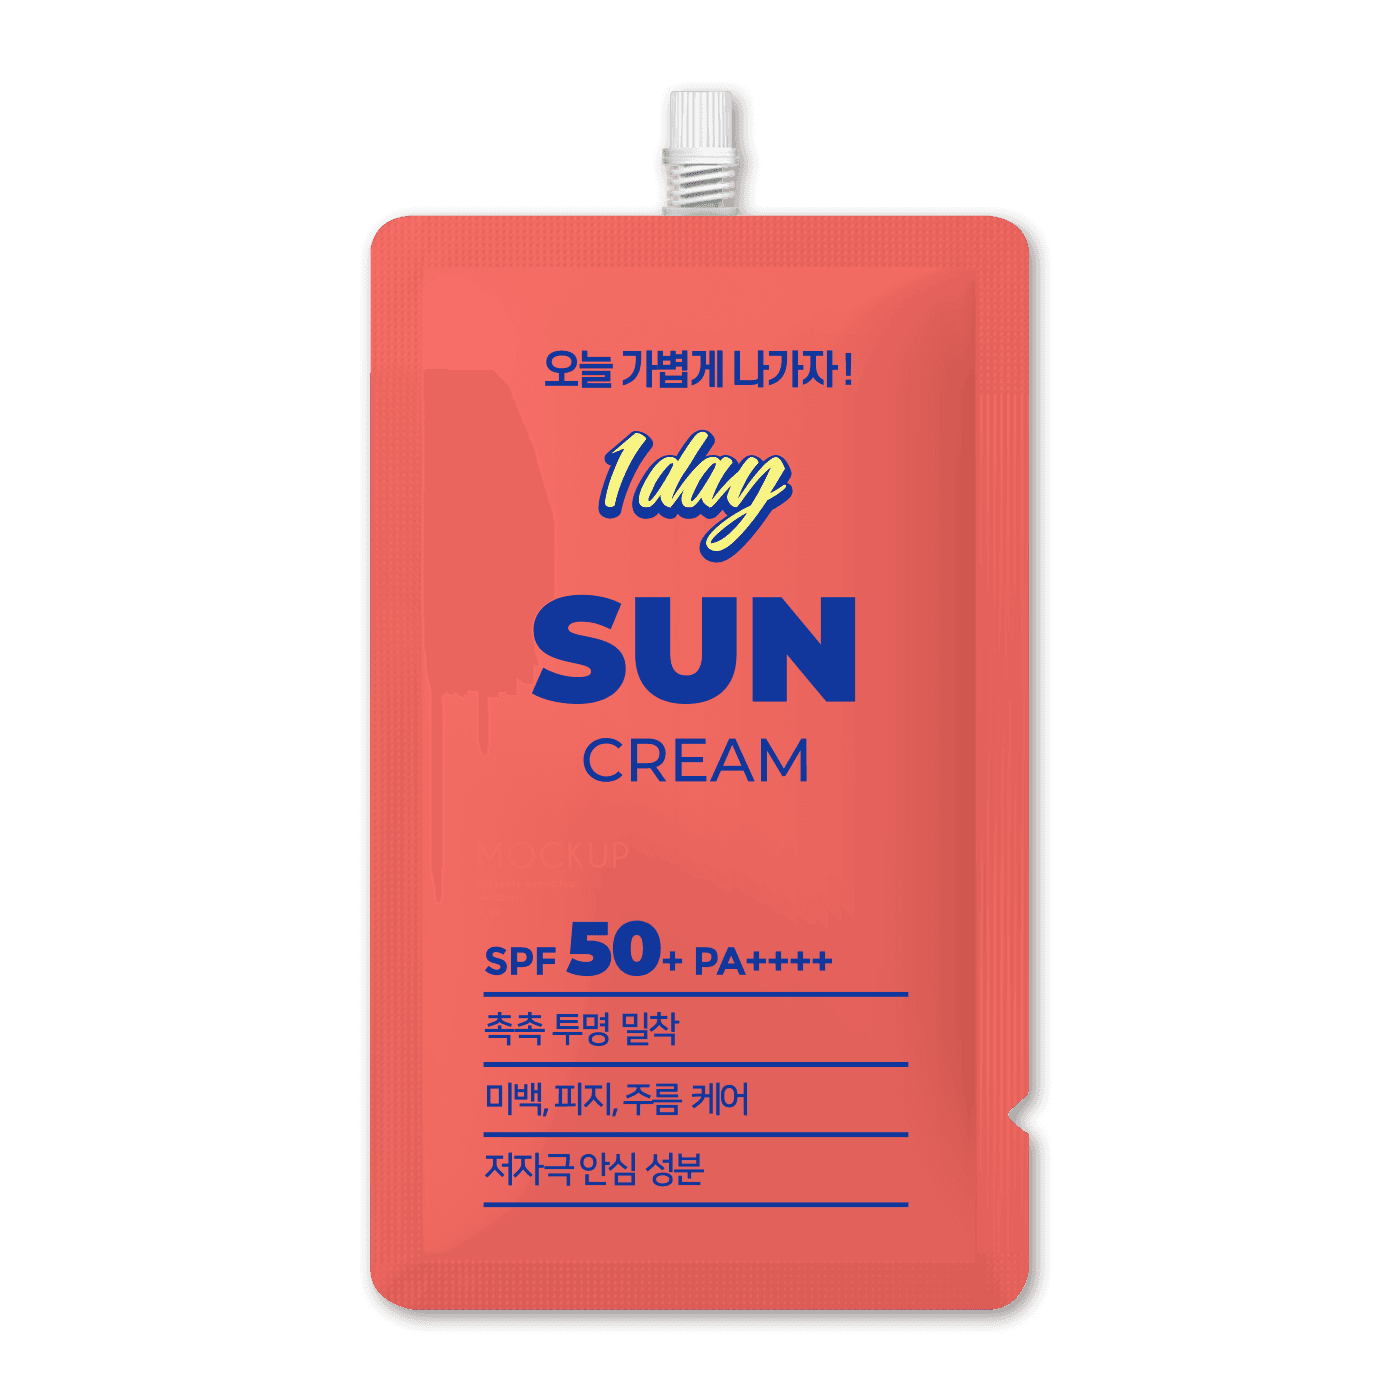 1day Sun Cream SPF50+ PA++++